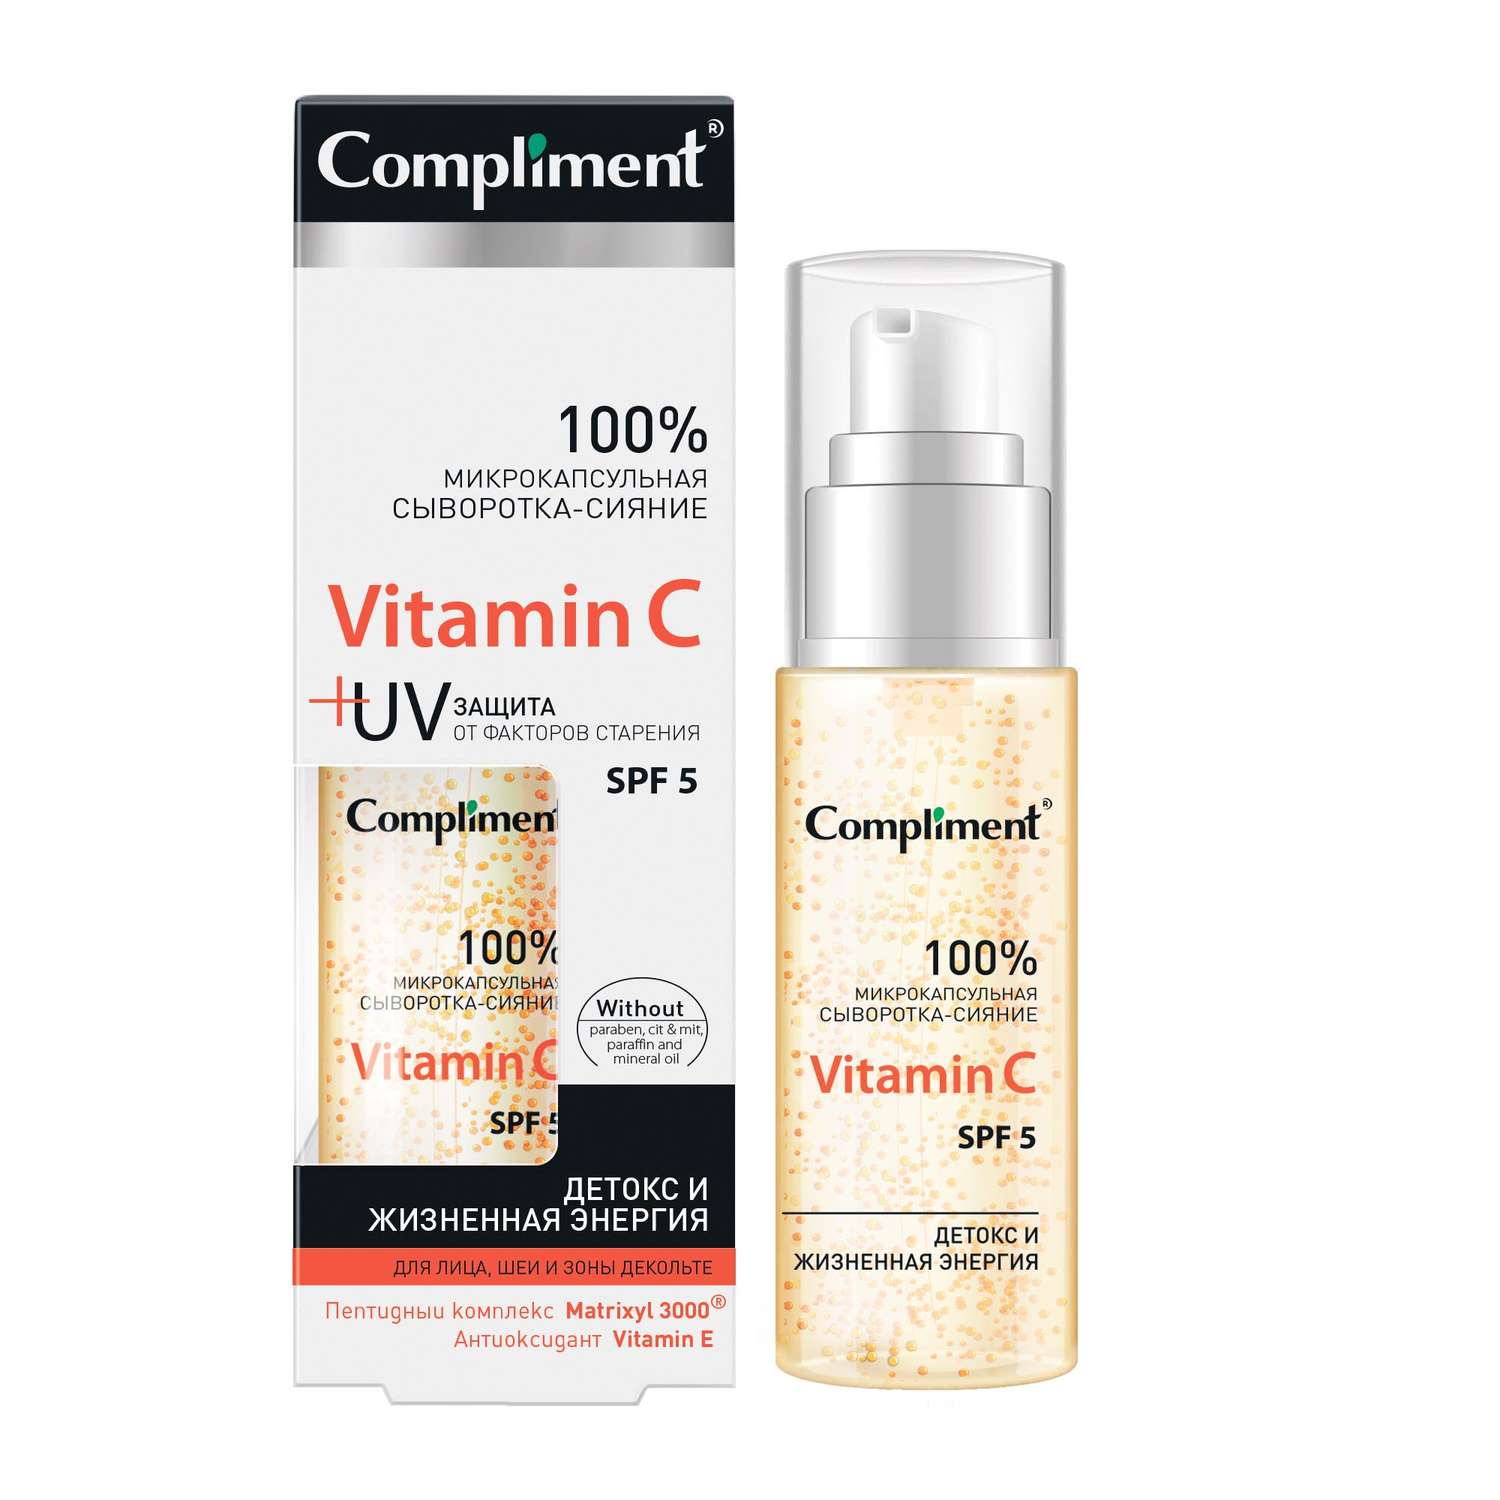 Сыворотка-сияние Compliment Микрокапсульная для лица шеи и зоны декольте Vitamin C 50 мл - фото 1